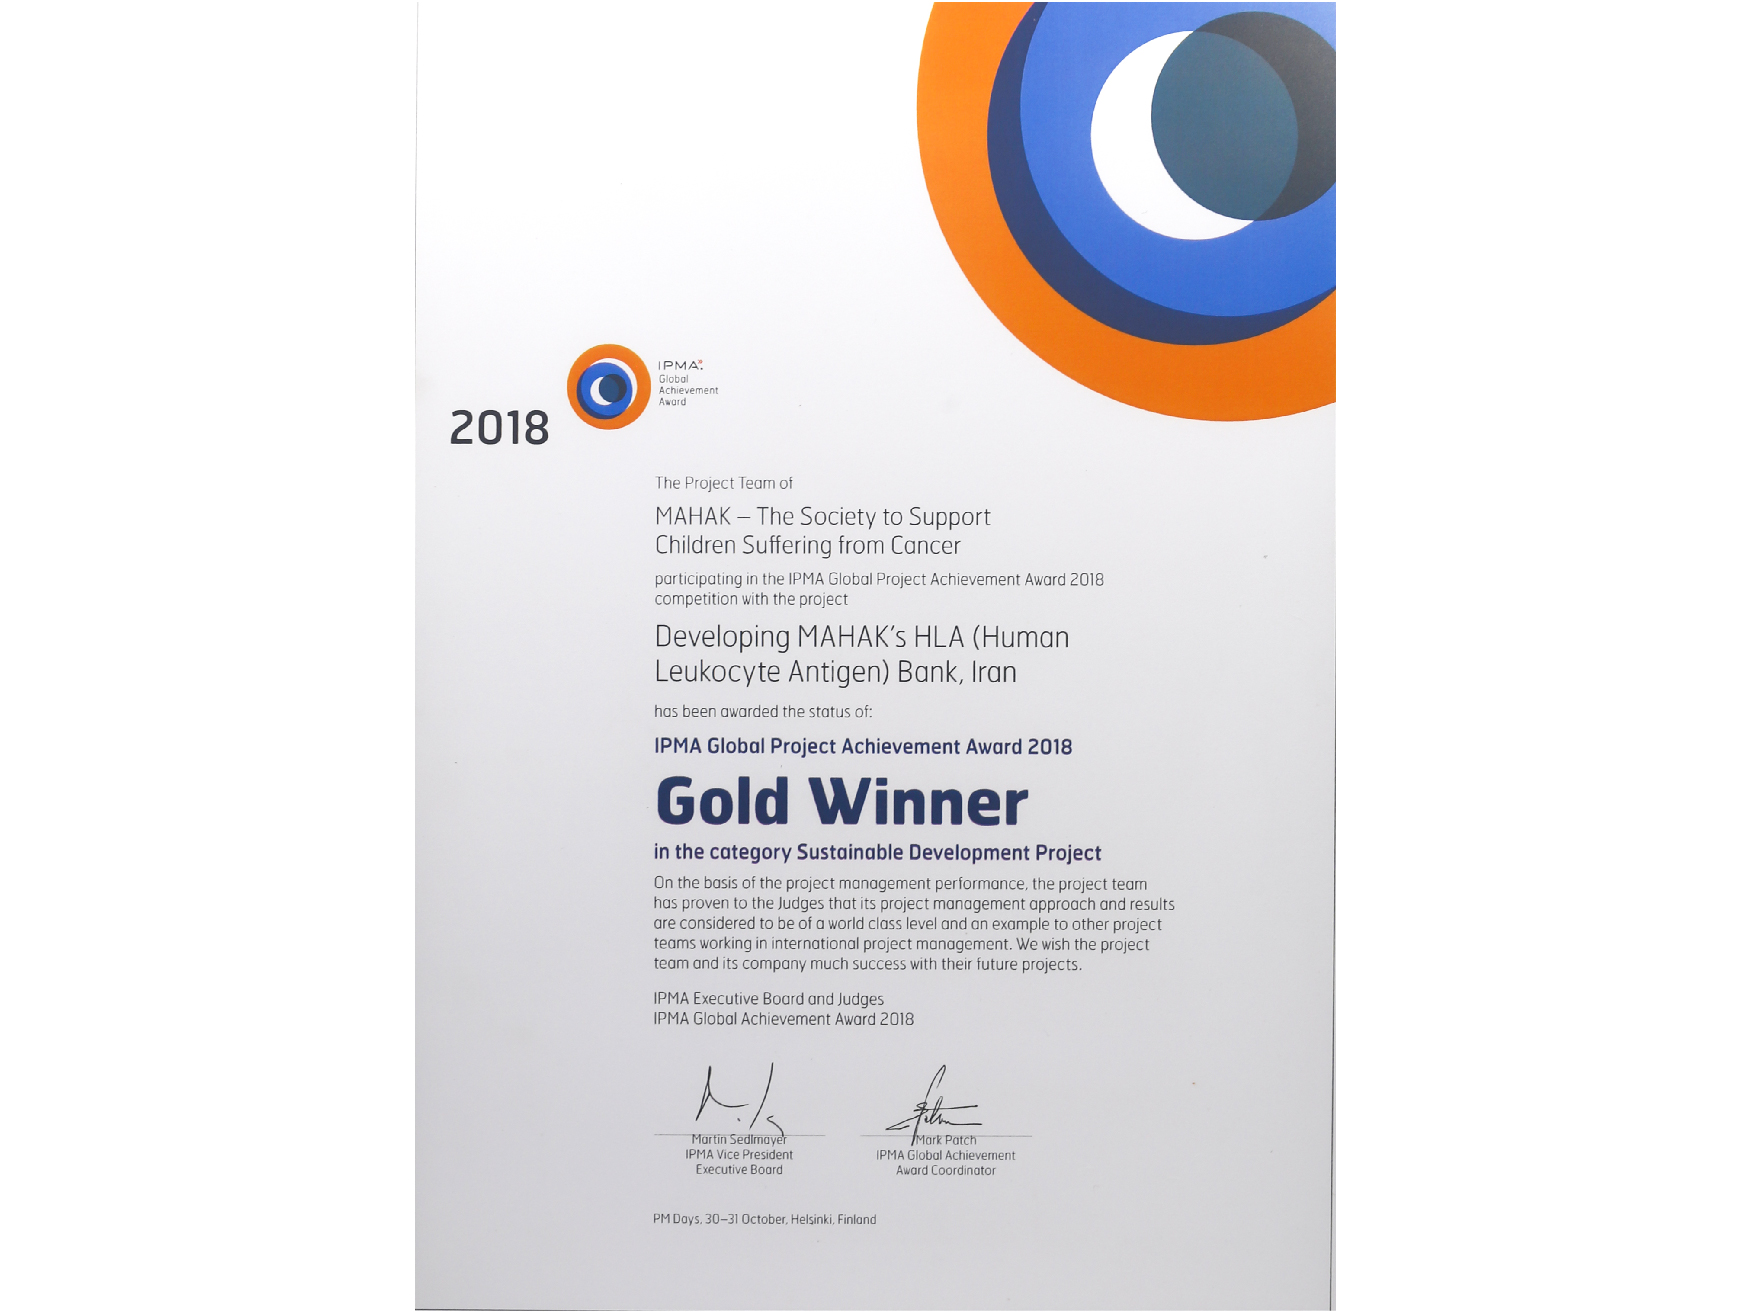 جایزه طلای انجمن بین المللی مدیریت پروژه ۲۰۱۸